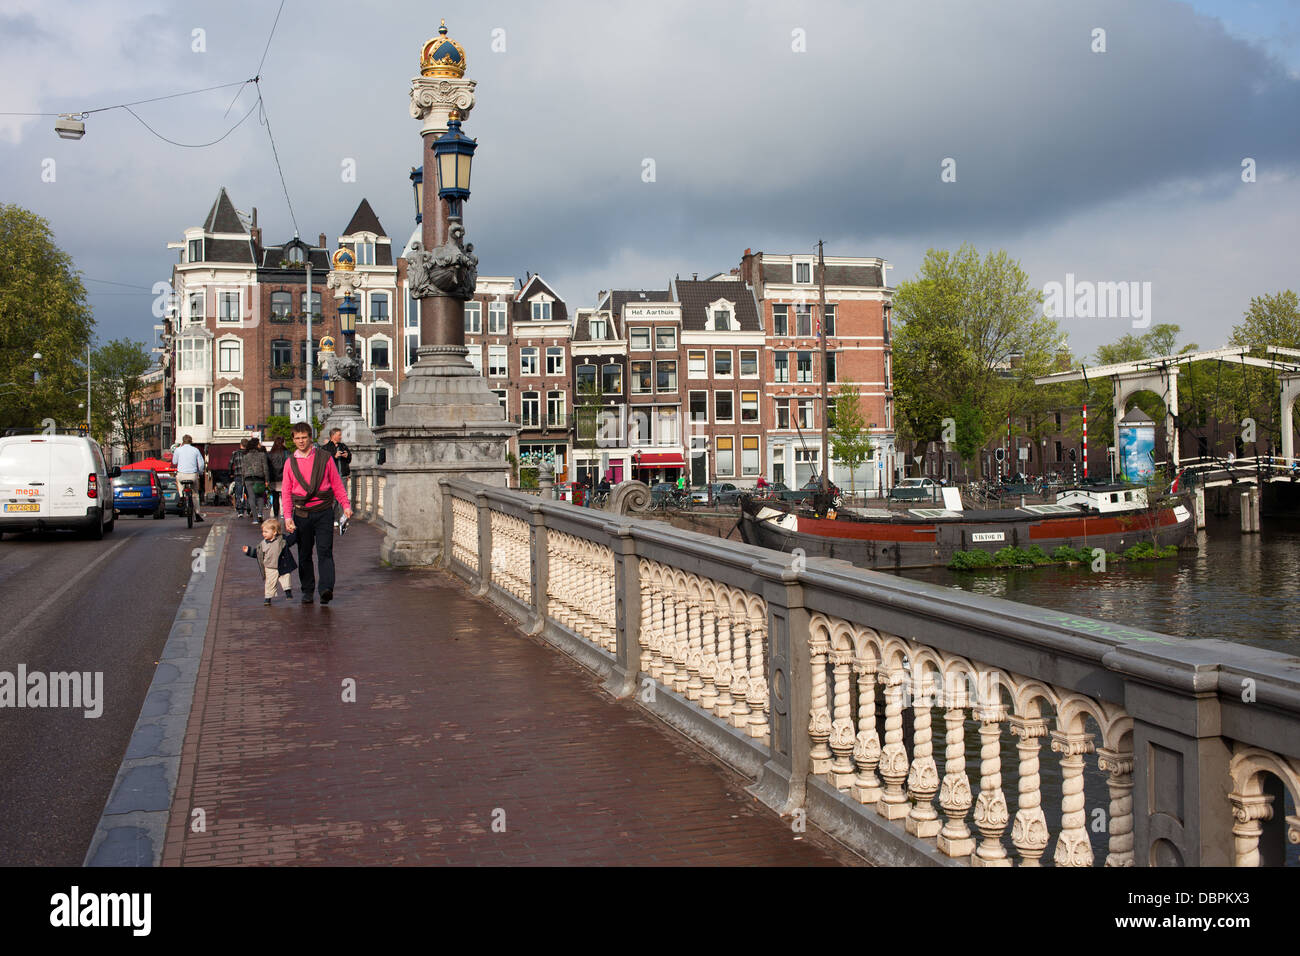 Sur le trottoir du pont (Hogesluis Hoge Brug Sluis) sur la rivière Amstel, ville d'Amsterdam en Hollande, aux Pays-Bas. Banque D'Images